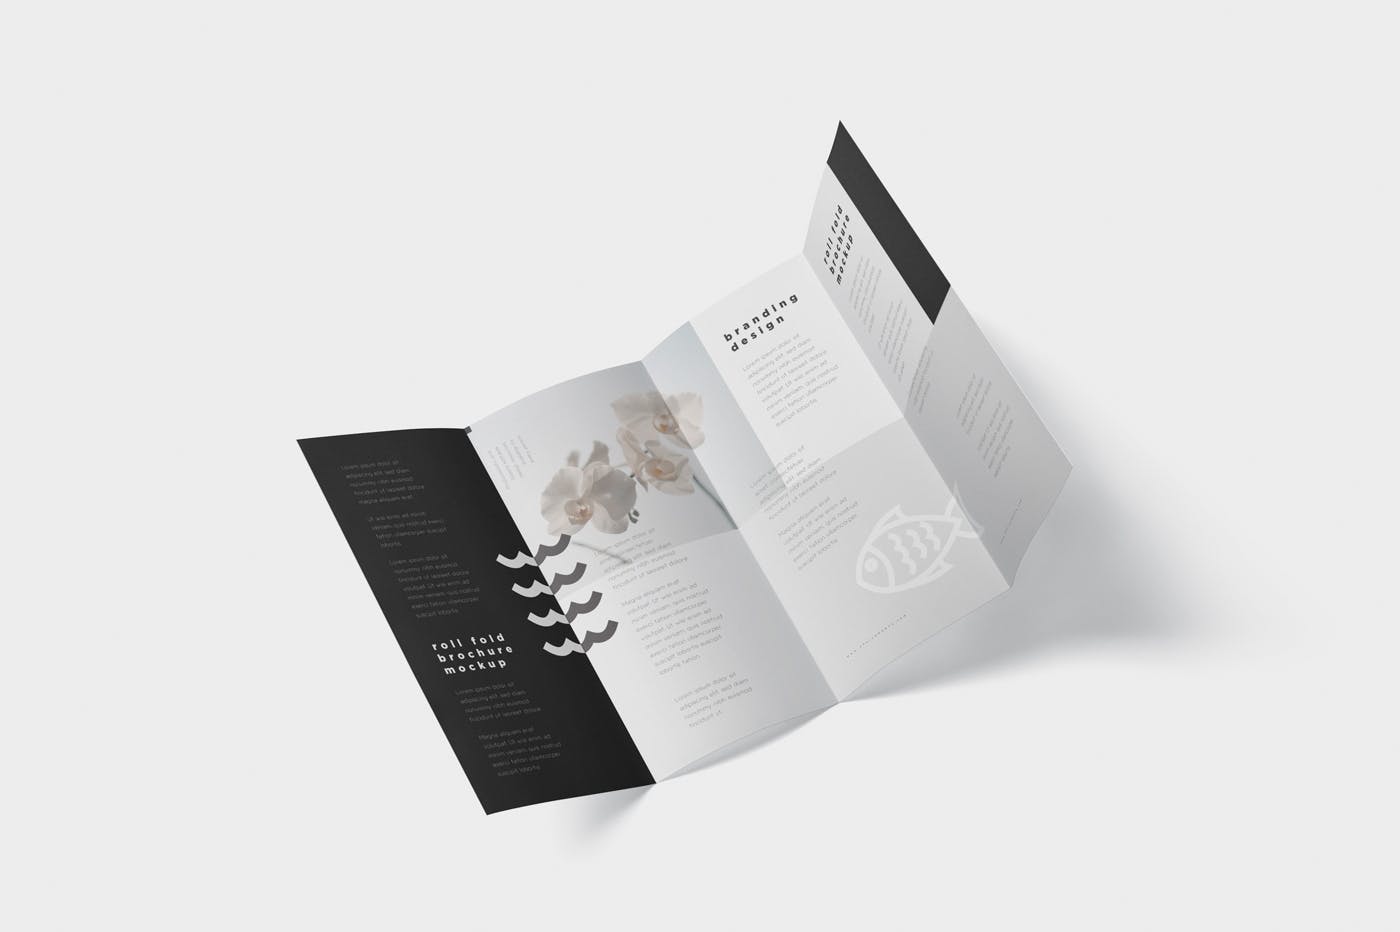 折叠设计风格企业传单/宣传册设计样机非凡图库精选 Roll-Fold Brochure Mockup – DL DIN Lang Size插图(5)